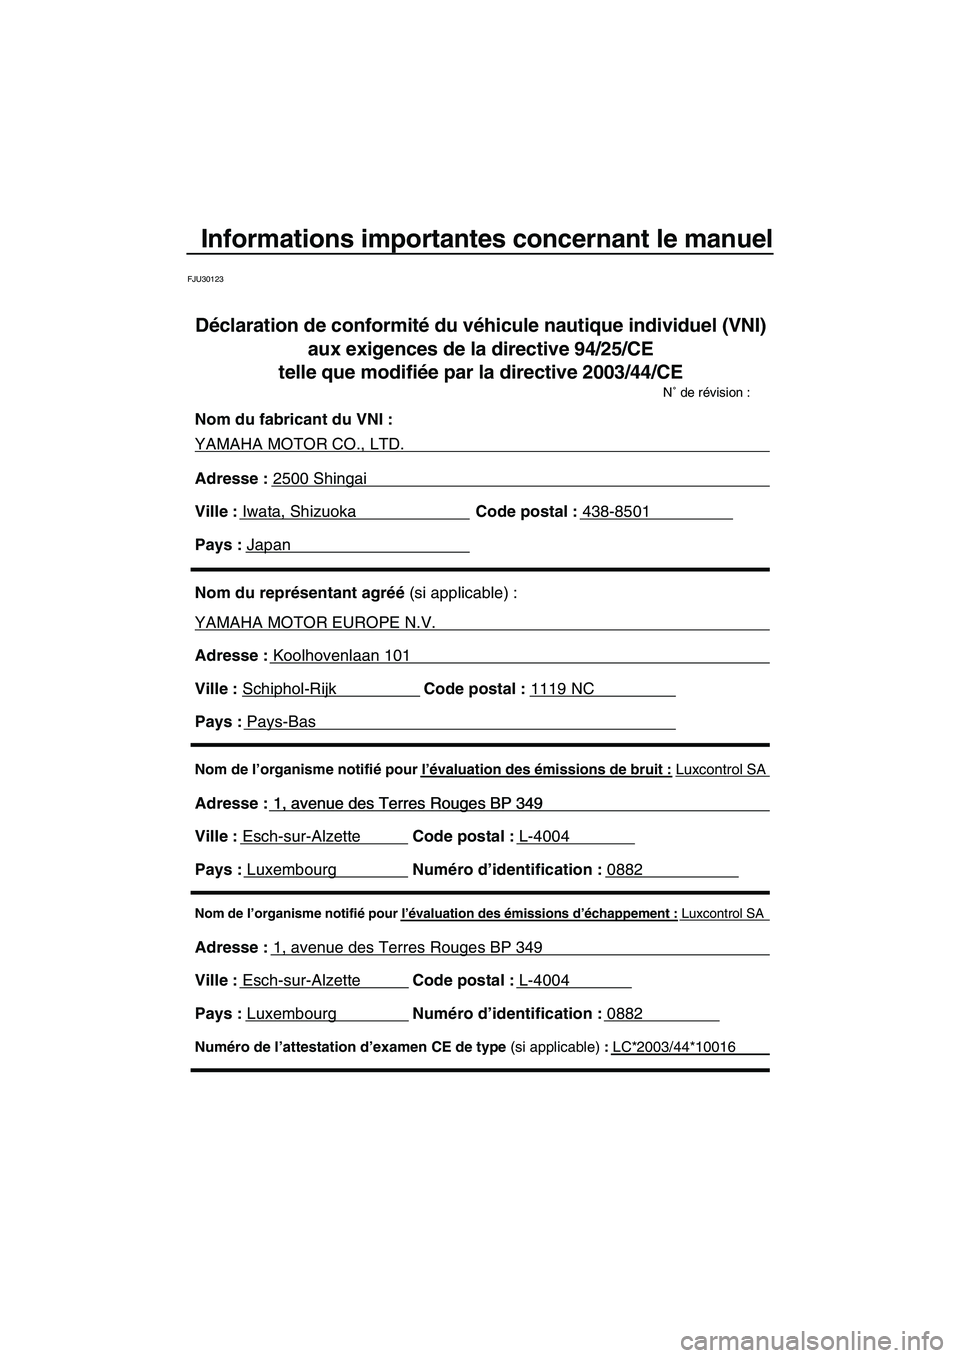 YAMAHA VX 2009  Notices Demploi (in French) Informations importantes concernant le manuel
FJU30123
Nom de l’organisme notifié pour l’évaluation des émissions d’échappement : Luxcontrol SA
Adresse : 1, avenue des Terres Rouges BP 349 
